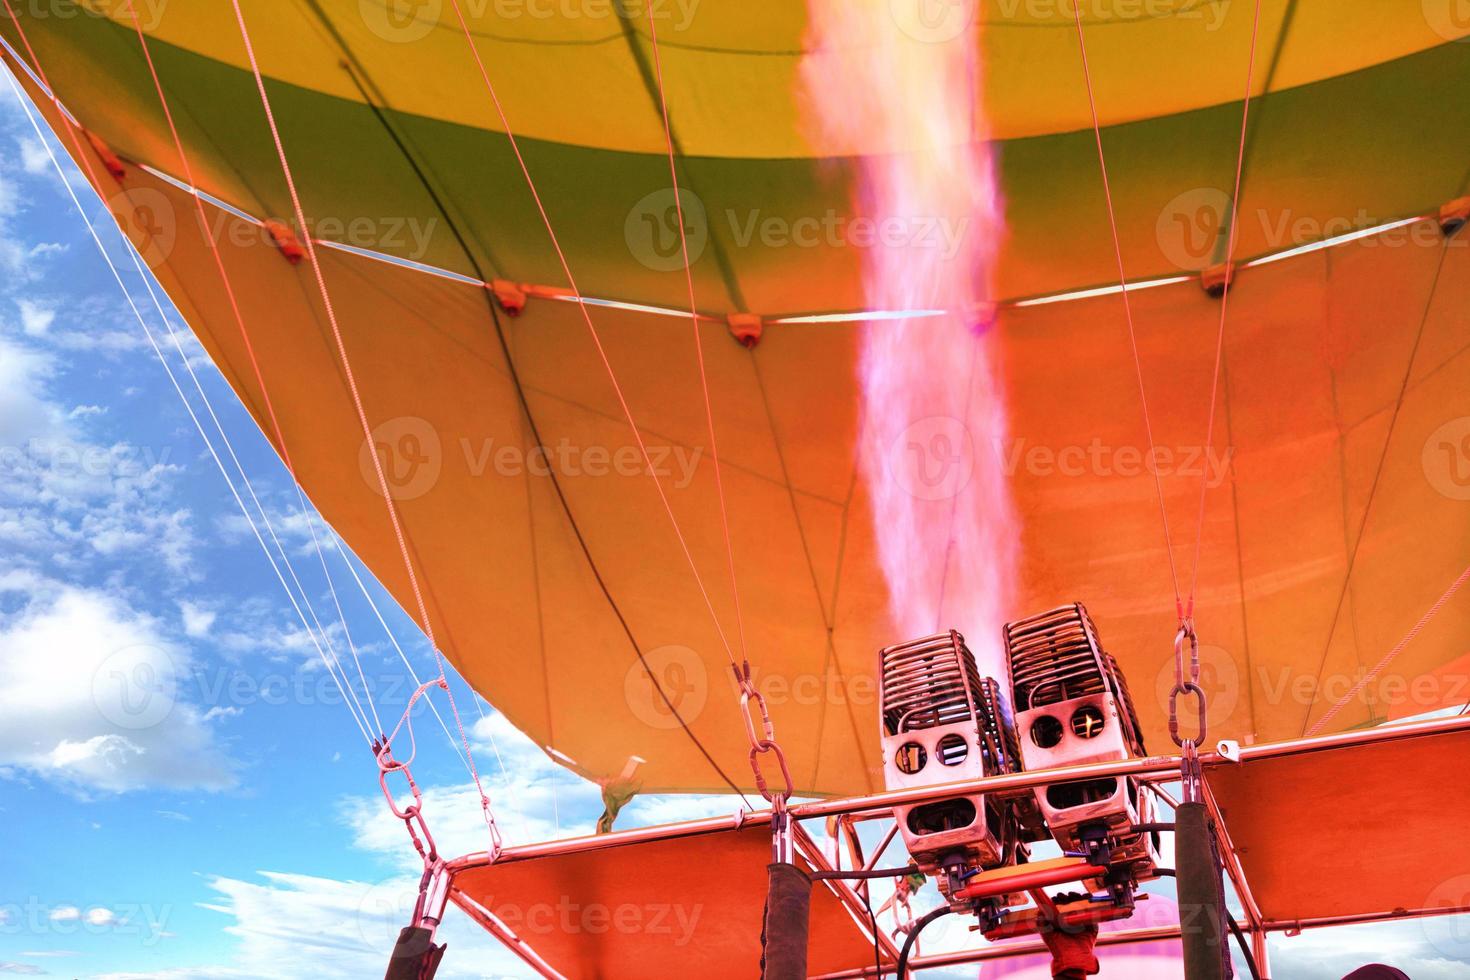 le feu de couleur corail sort d'une puissante torche à gaz et remplit le ballon d'air chaud. photo